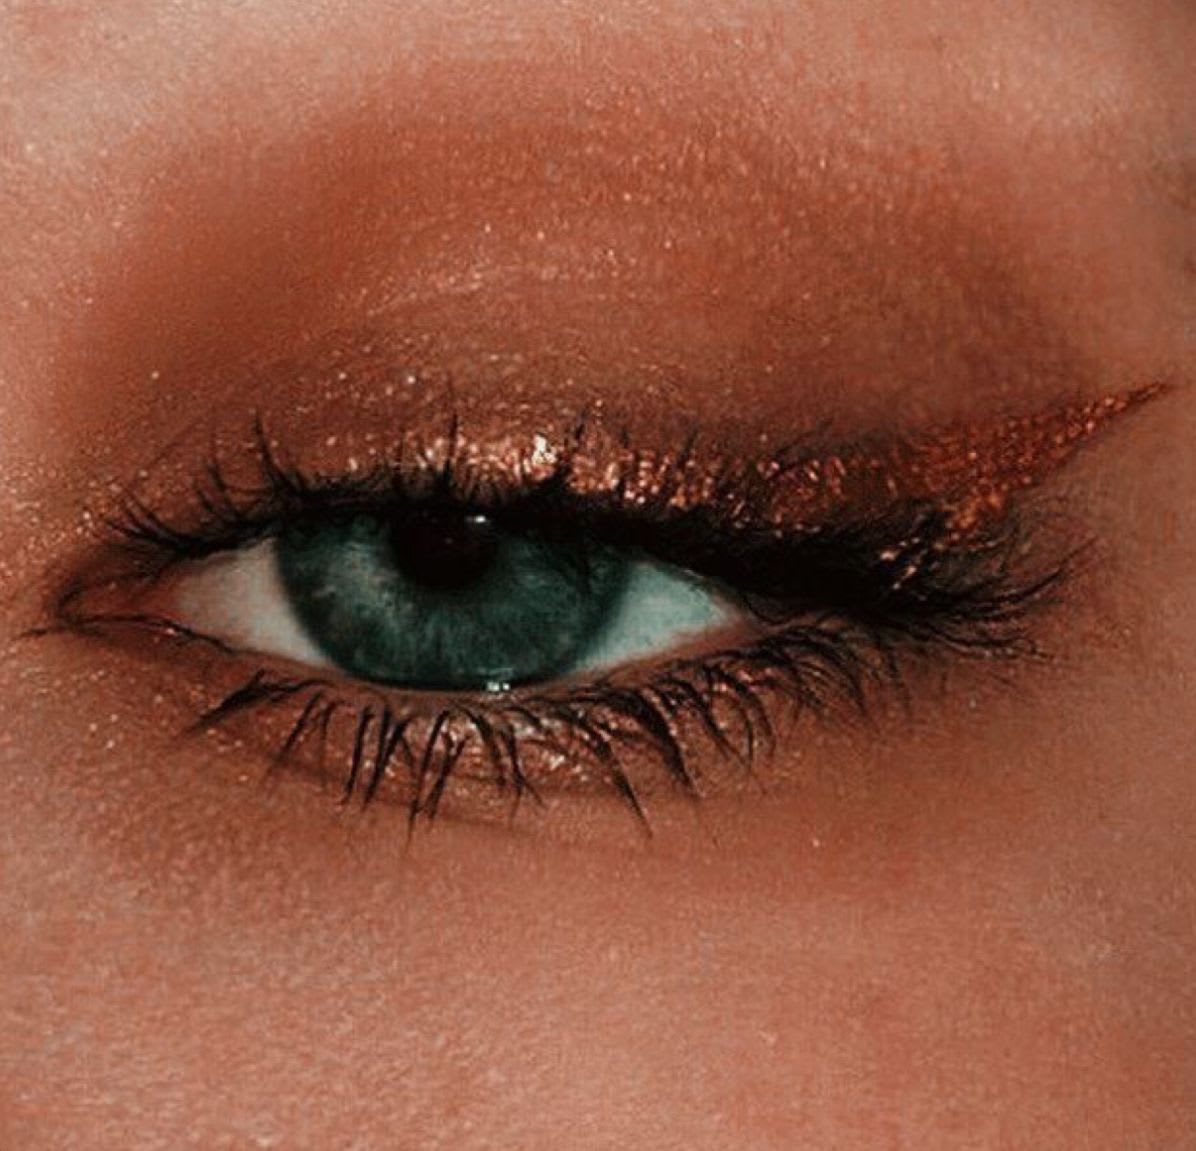 Pin by 𝔯𝔞𝔦𝔫 𝔡𝔯𝔬𝔭𝔰 on eyesight | Gold eyeliner, Metallic eye makeup, Skin makeup